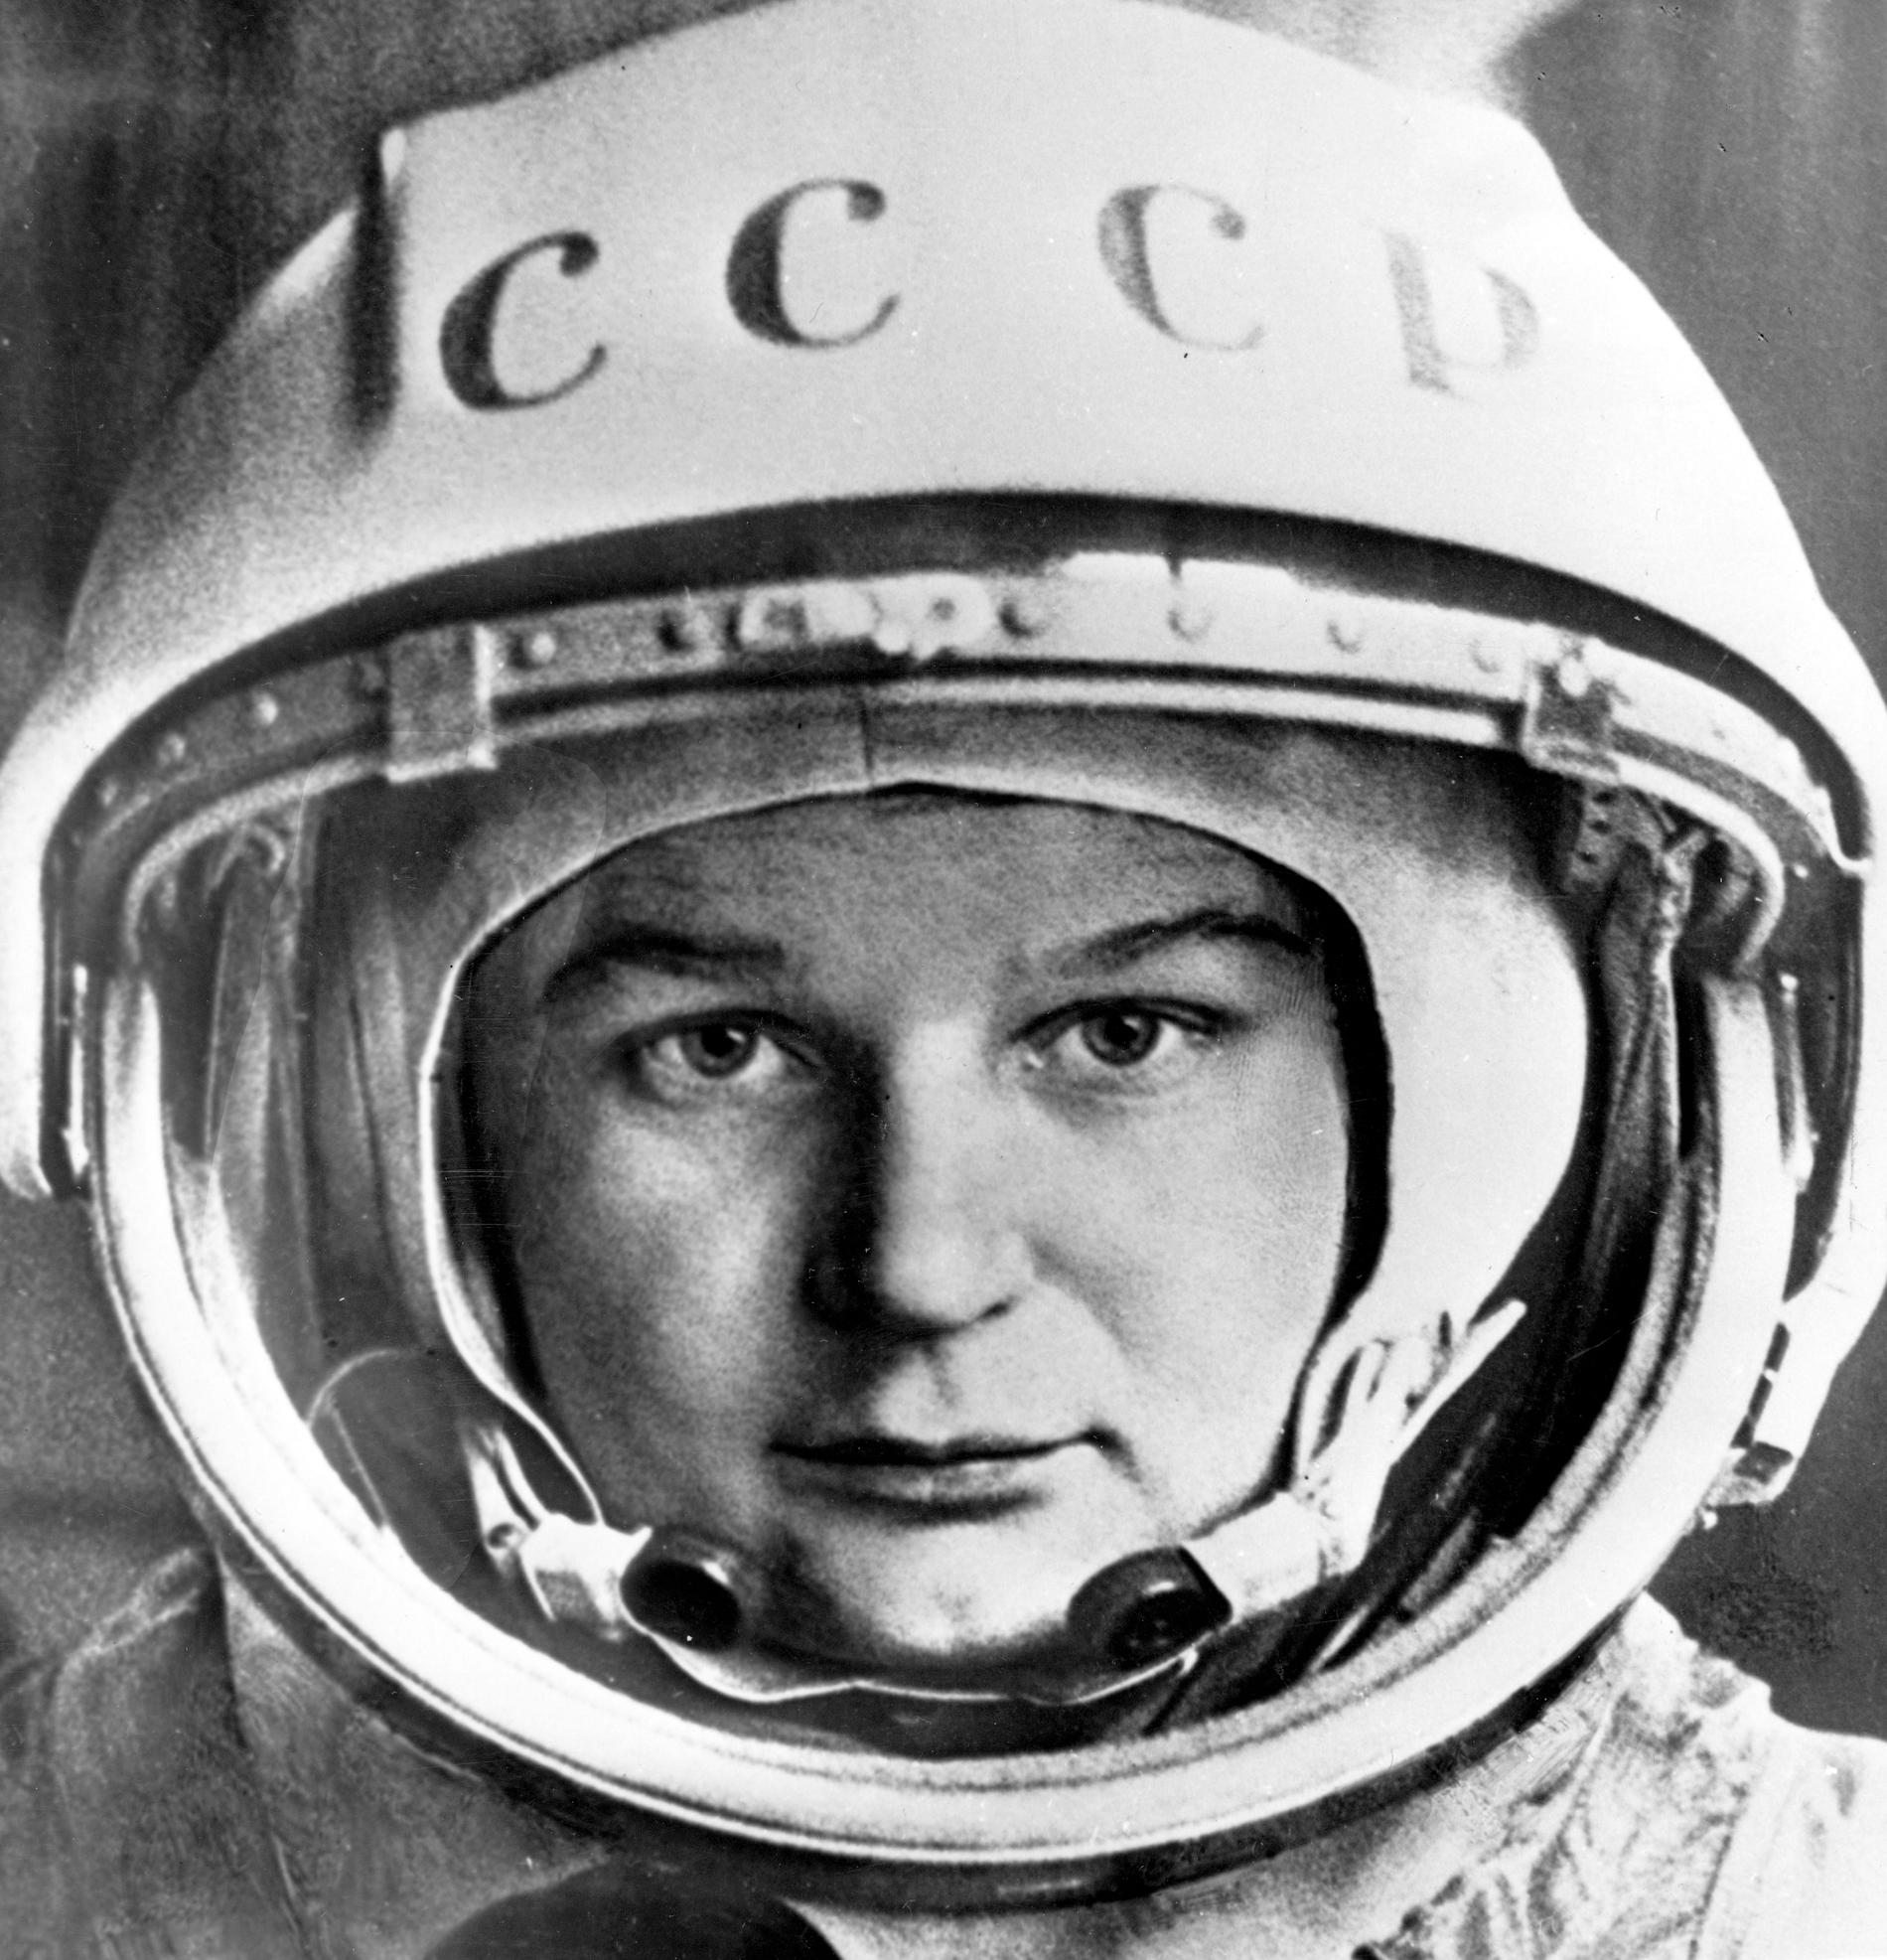 Valentina Teresjkova var den första kvinnan i rymden. Innan rymdfärden arbetade hon på en textilfabrik, och blev bland annat utvald på grund av sina erfarenheter från fallskärmshoppning. Efter rymdfärden utbildade hon sig till ingenjör och blev senare politiker. Arkivbild.